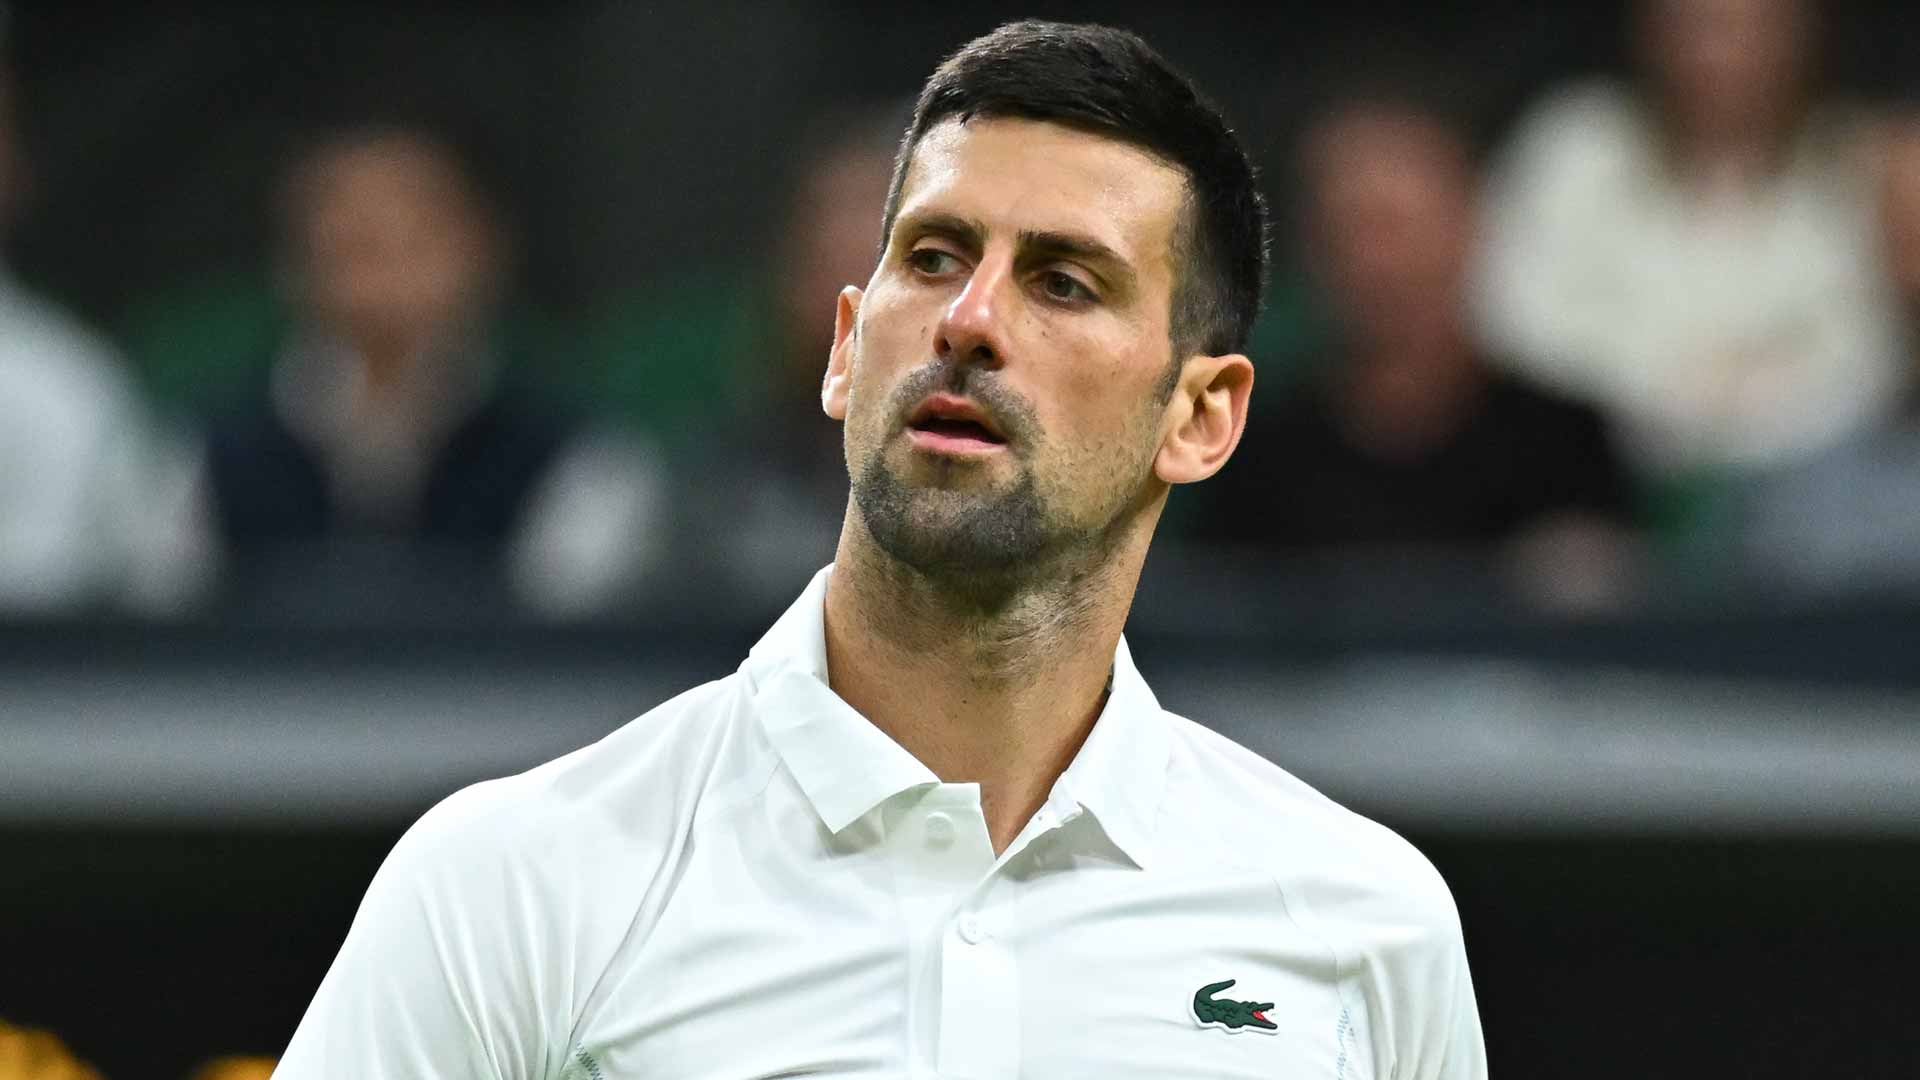 Novak Djokovic recently reached his first major final of the season at Wimbledon.